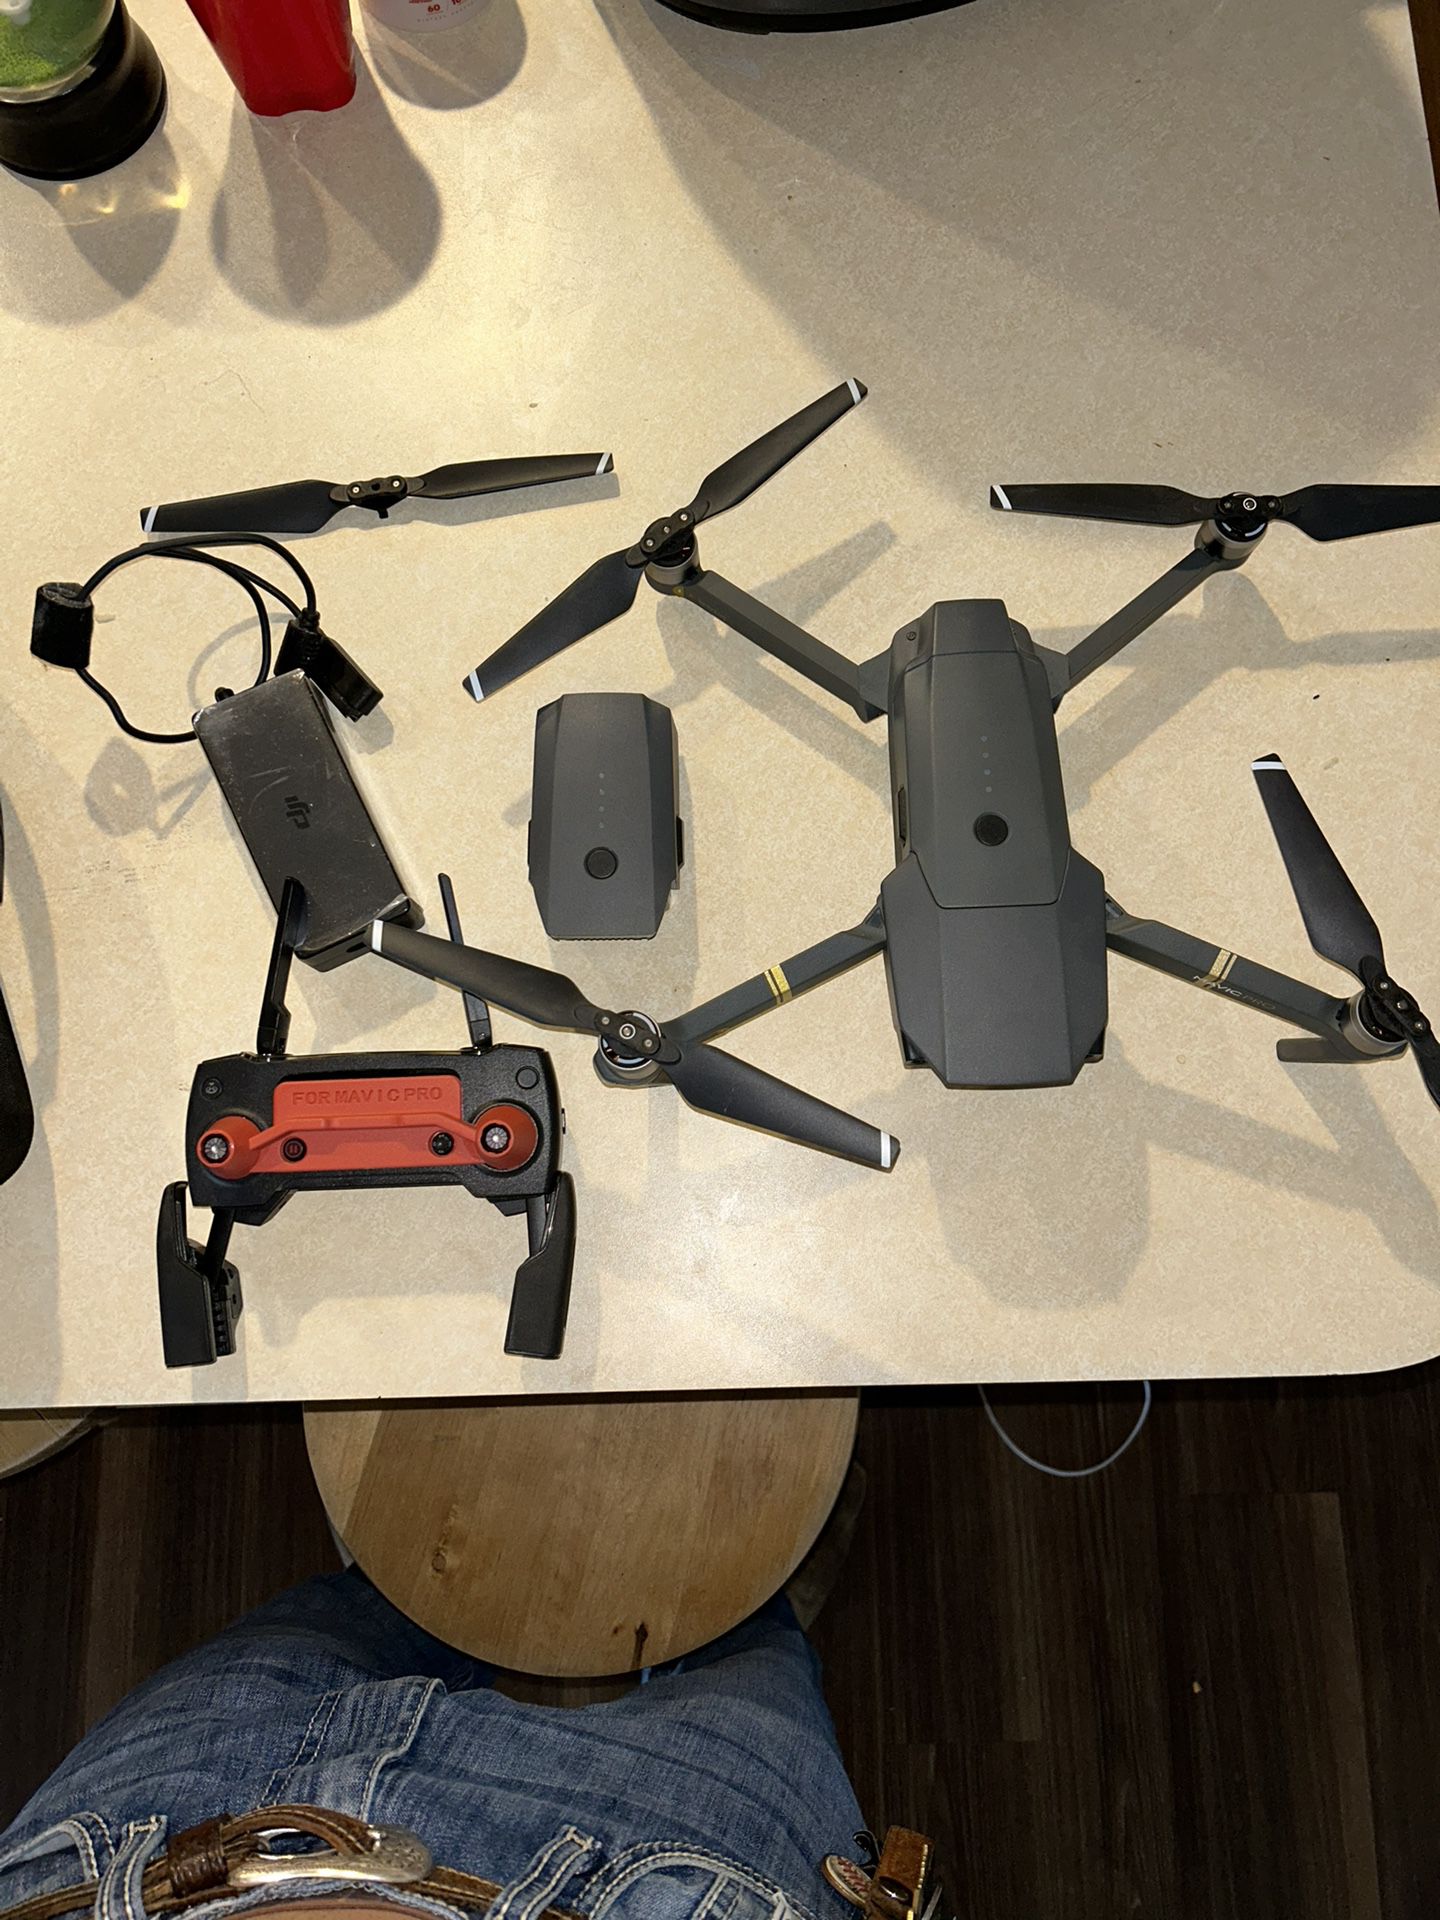 DGI Mavic Pro 4k Drone